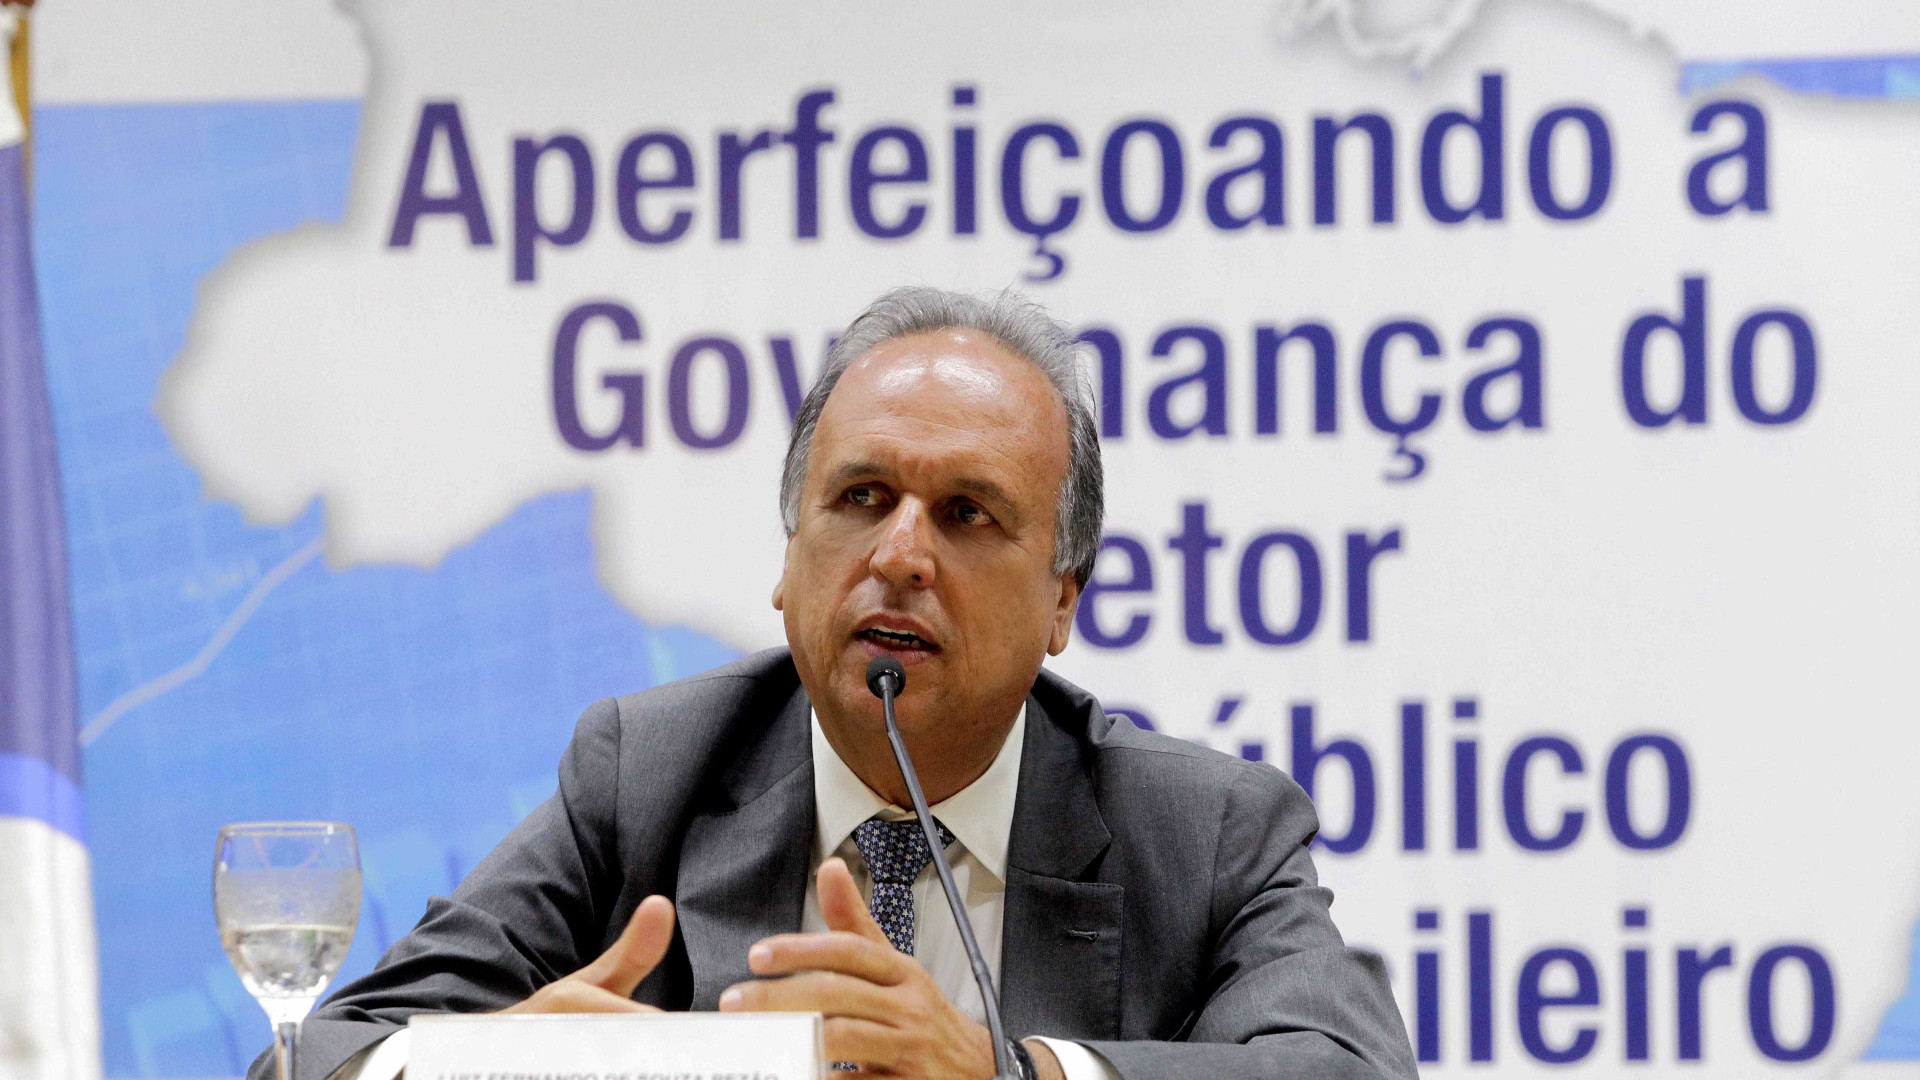 TCE flagra irregularidades bilionárias no
Fundo de Previdência do RJ